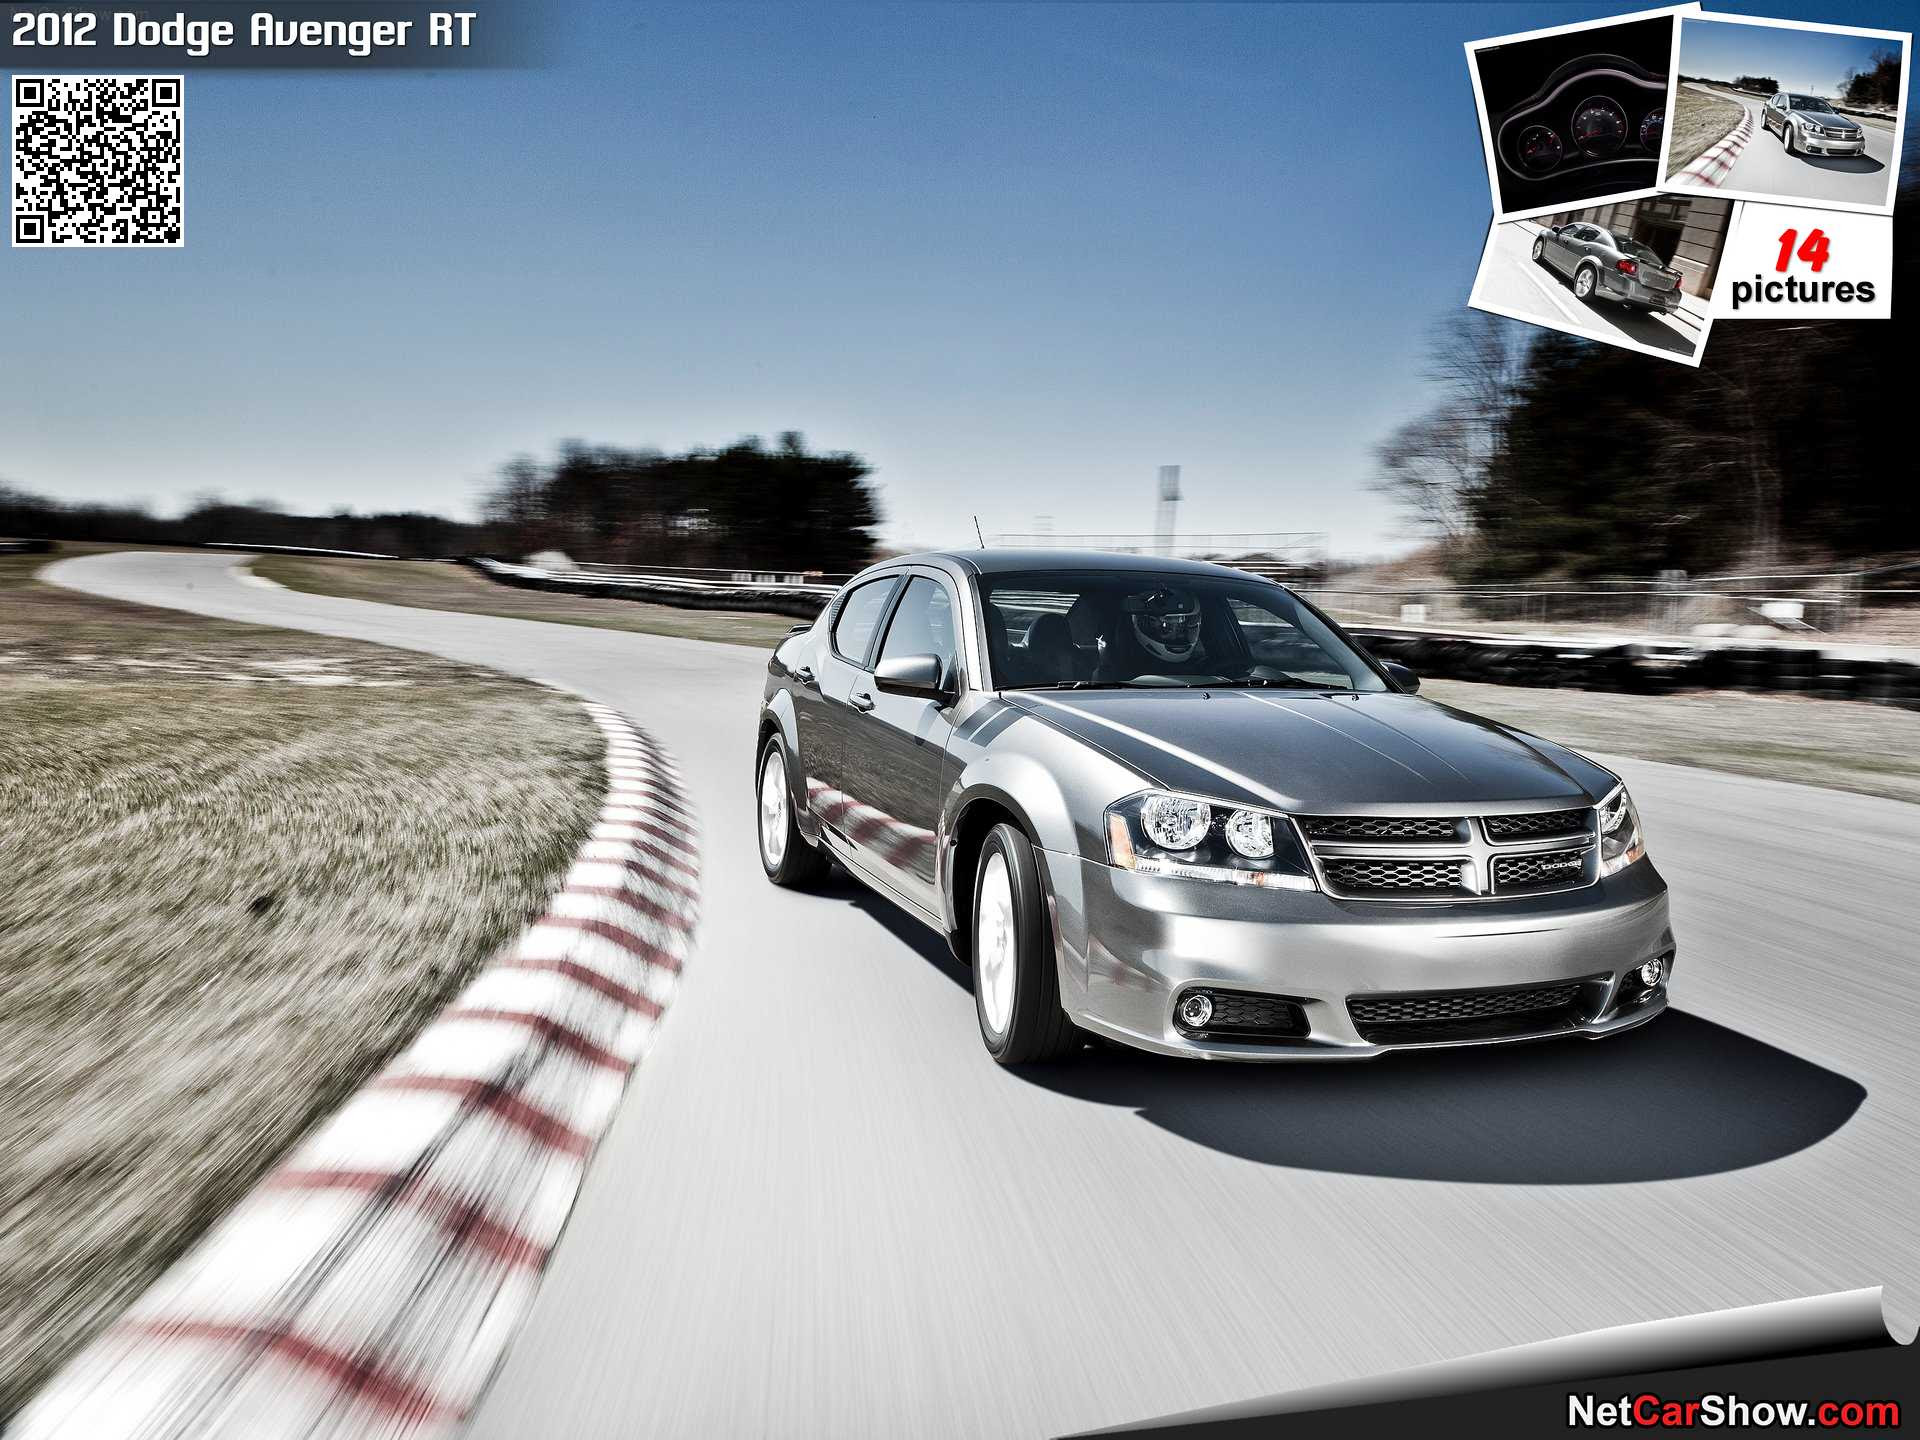 Dodge Avenger_RT 2012 wallpaper